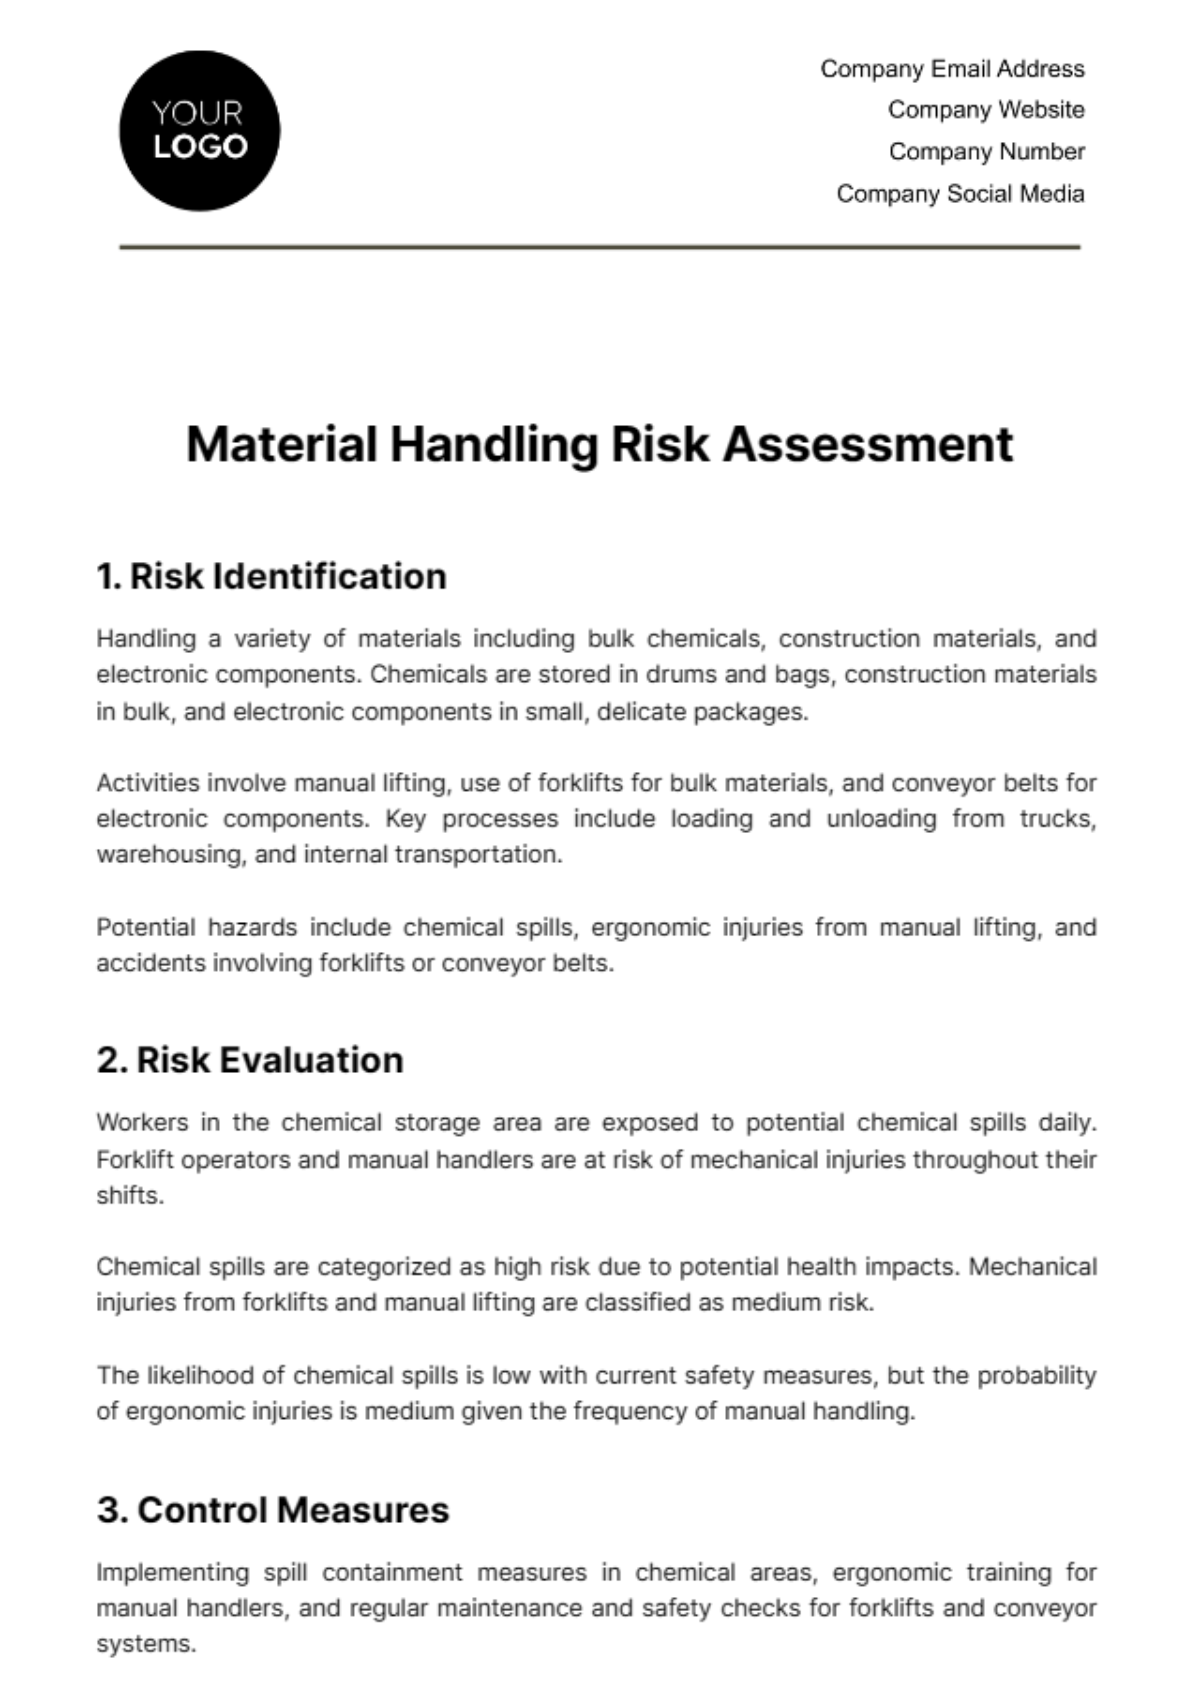 Material Handling Risk Assessment Template